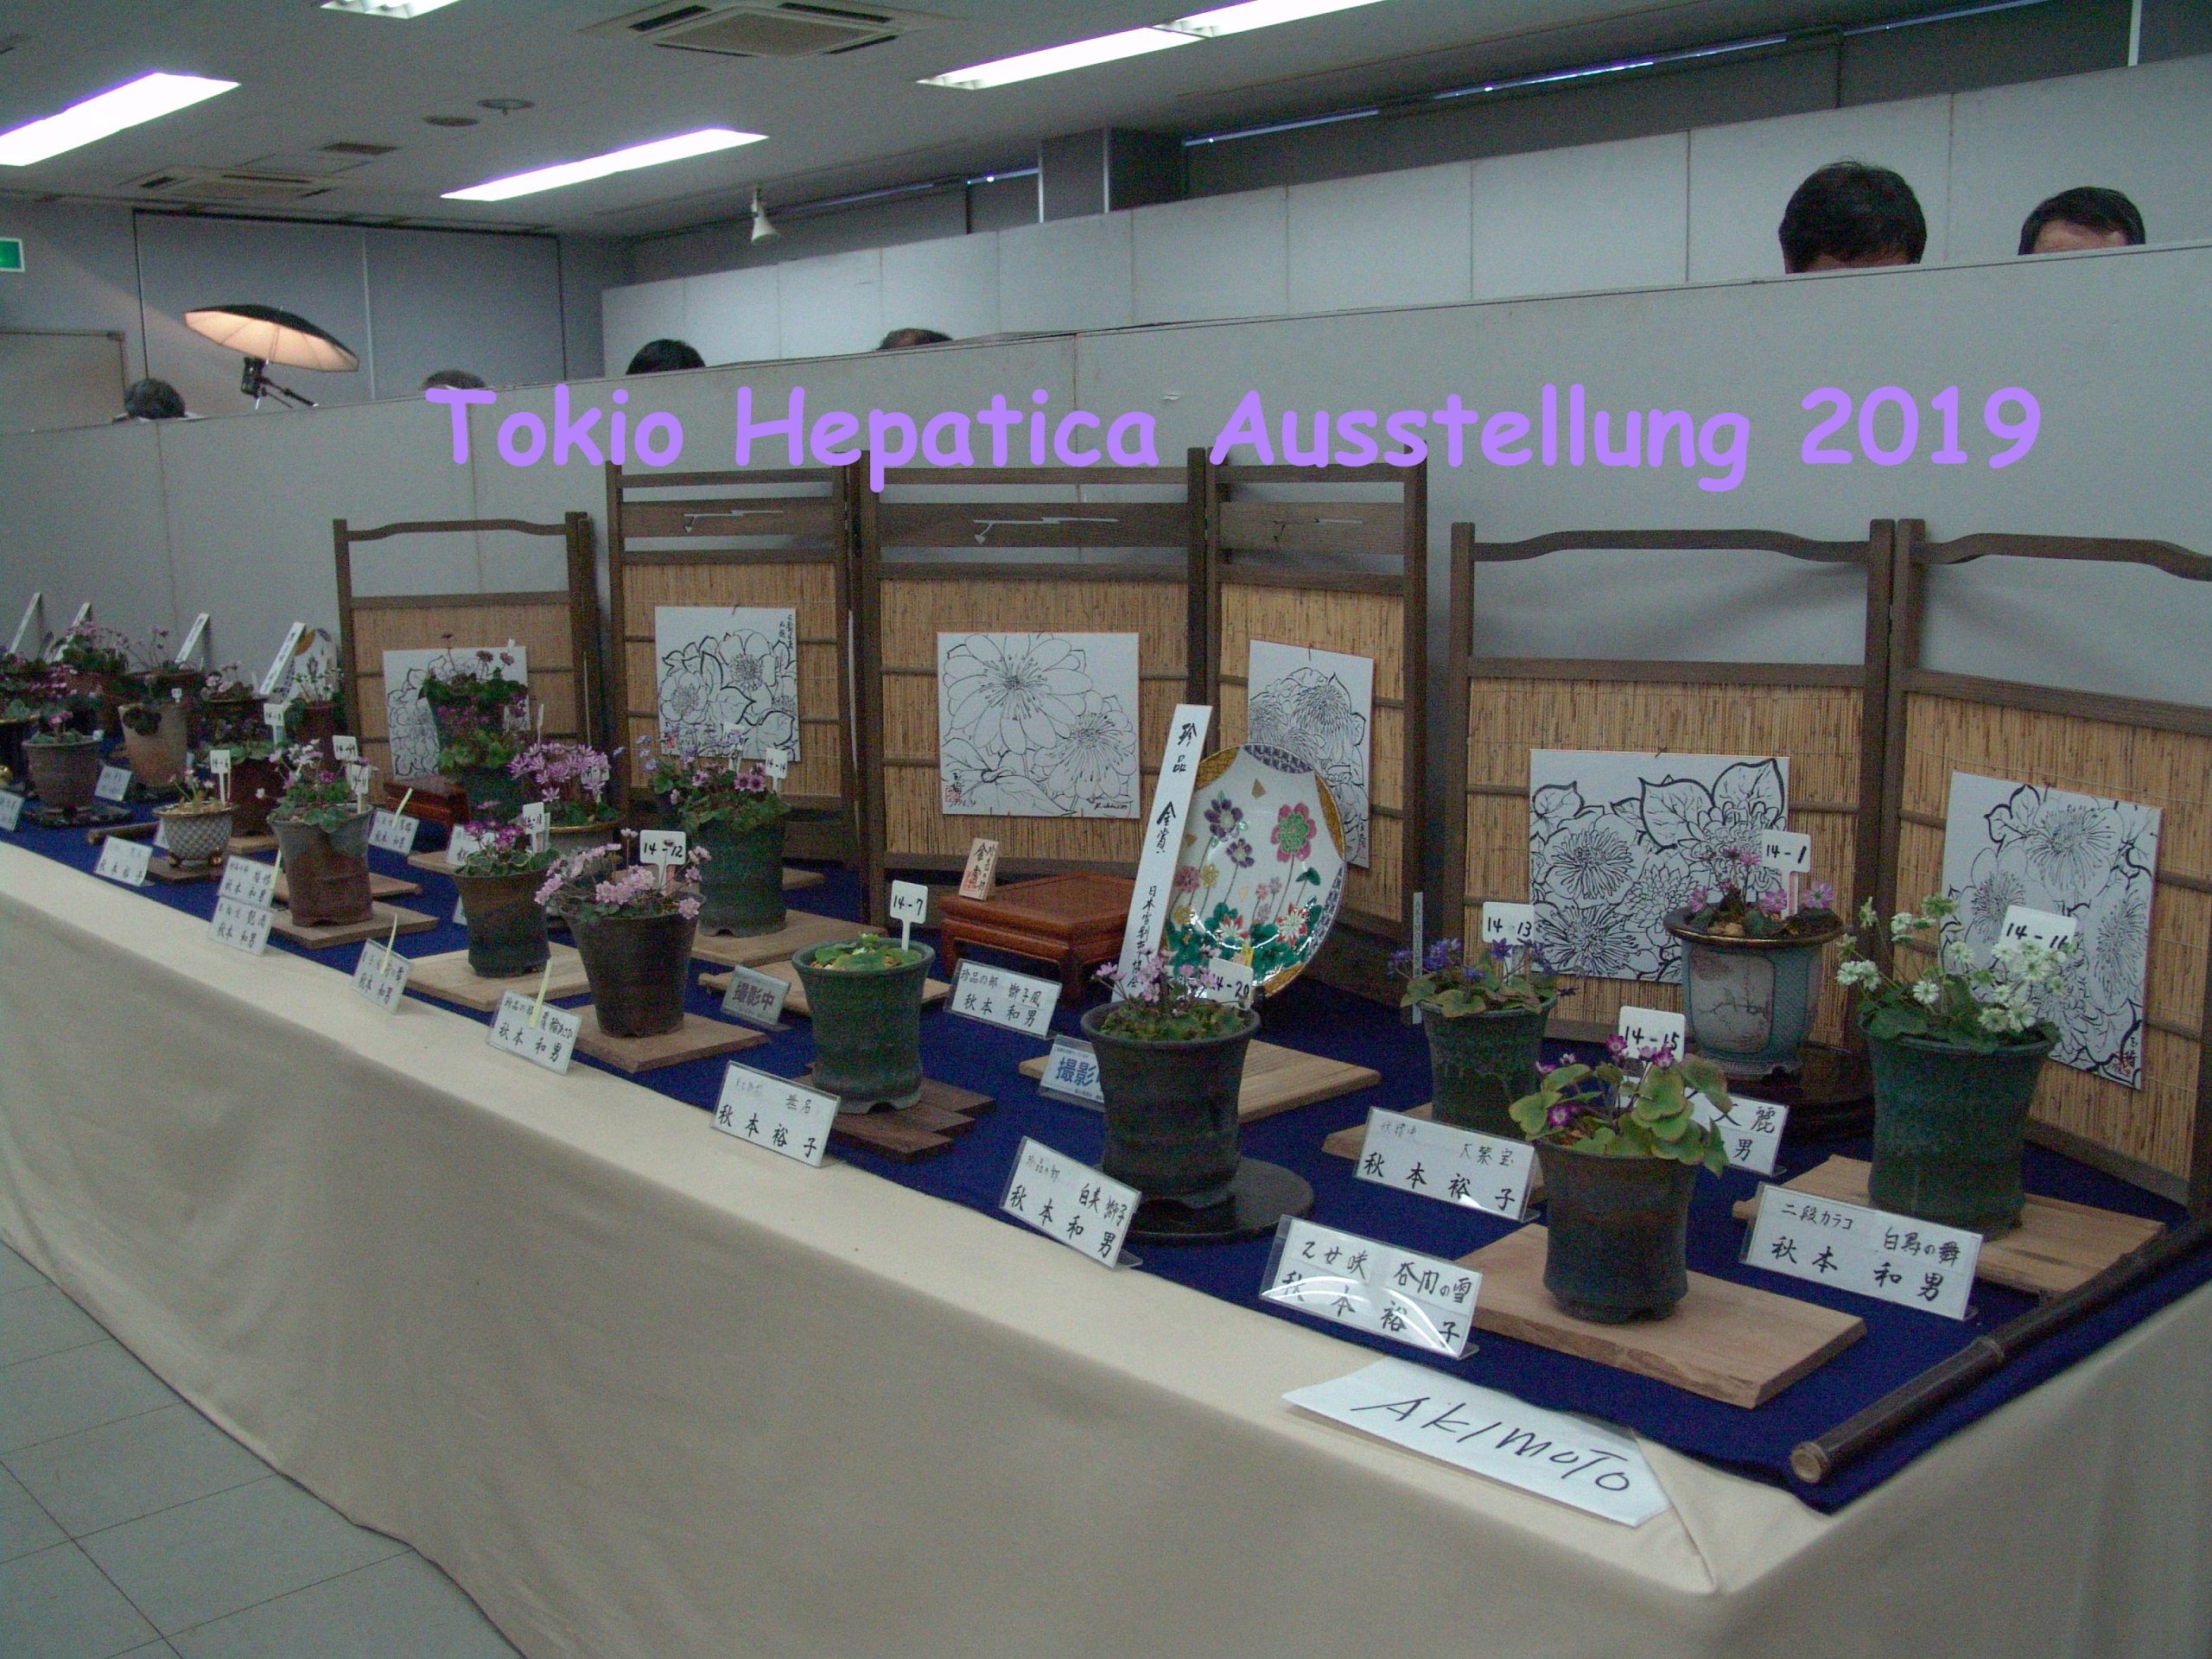 Tokio Hepatica Ausstellung 2009